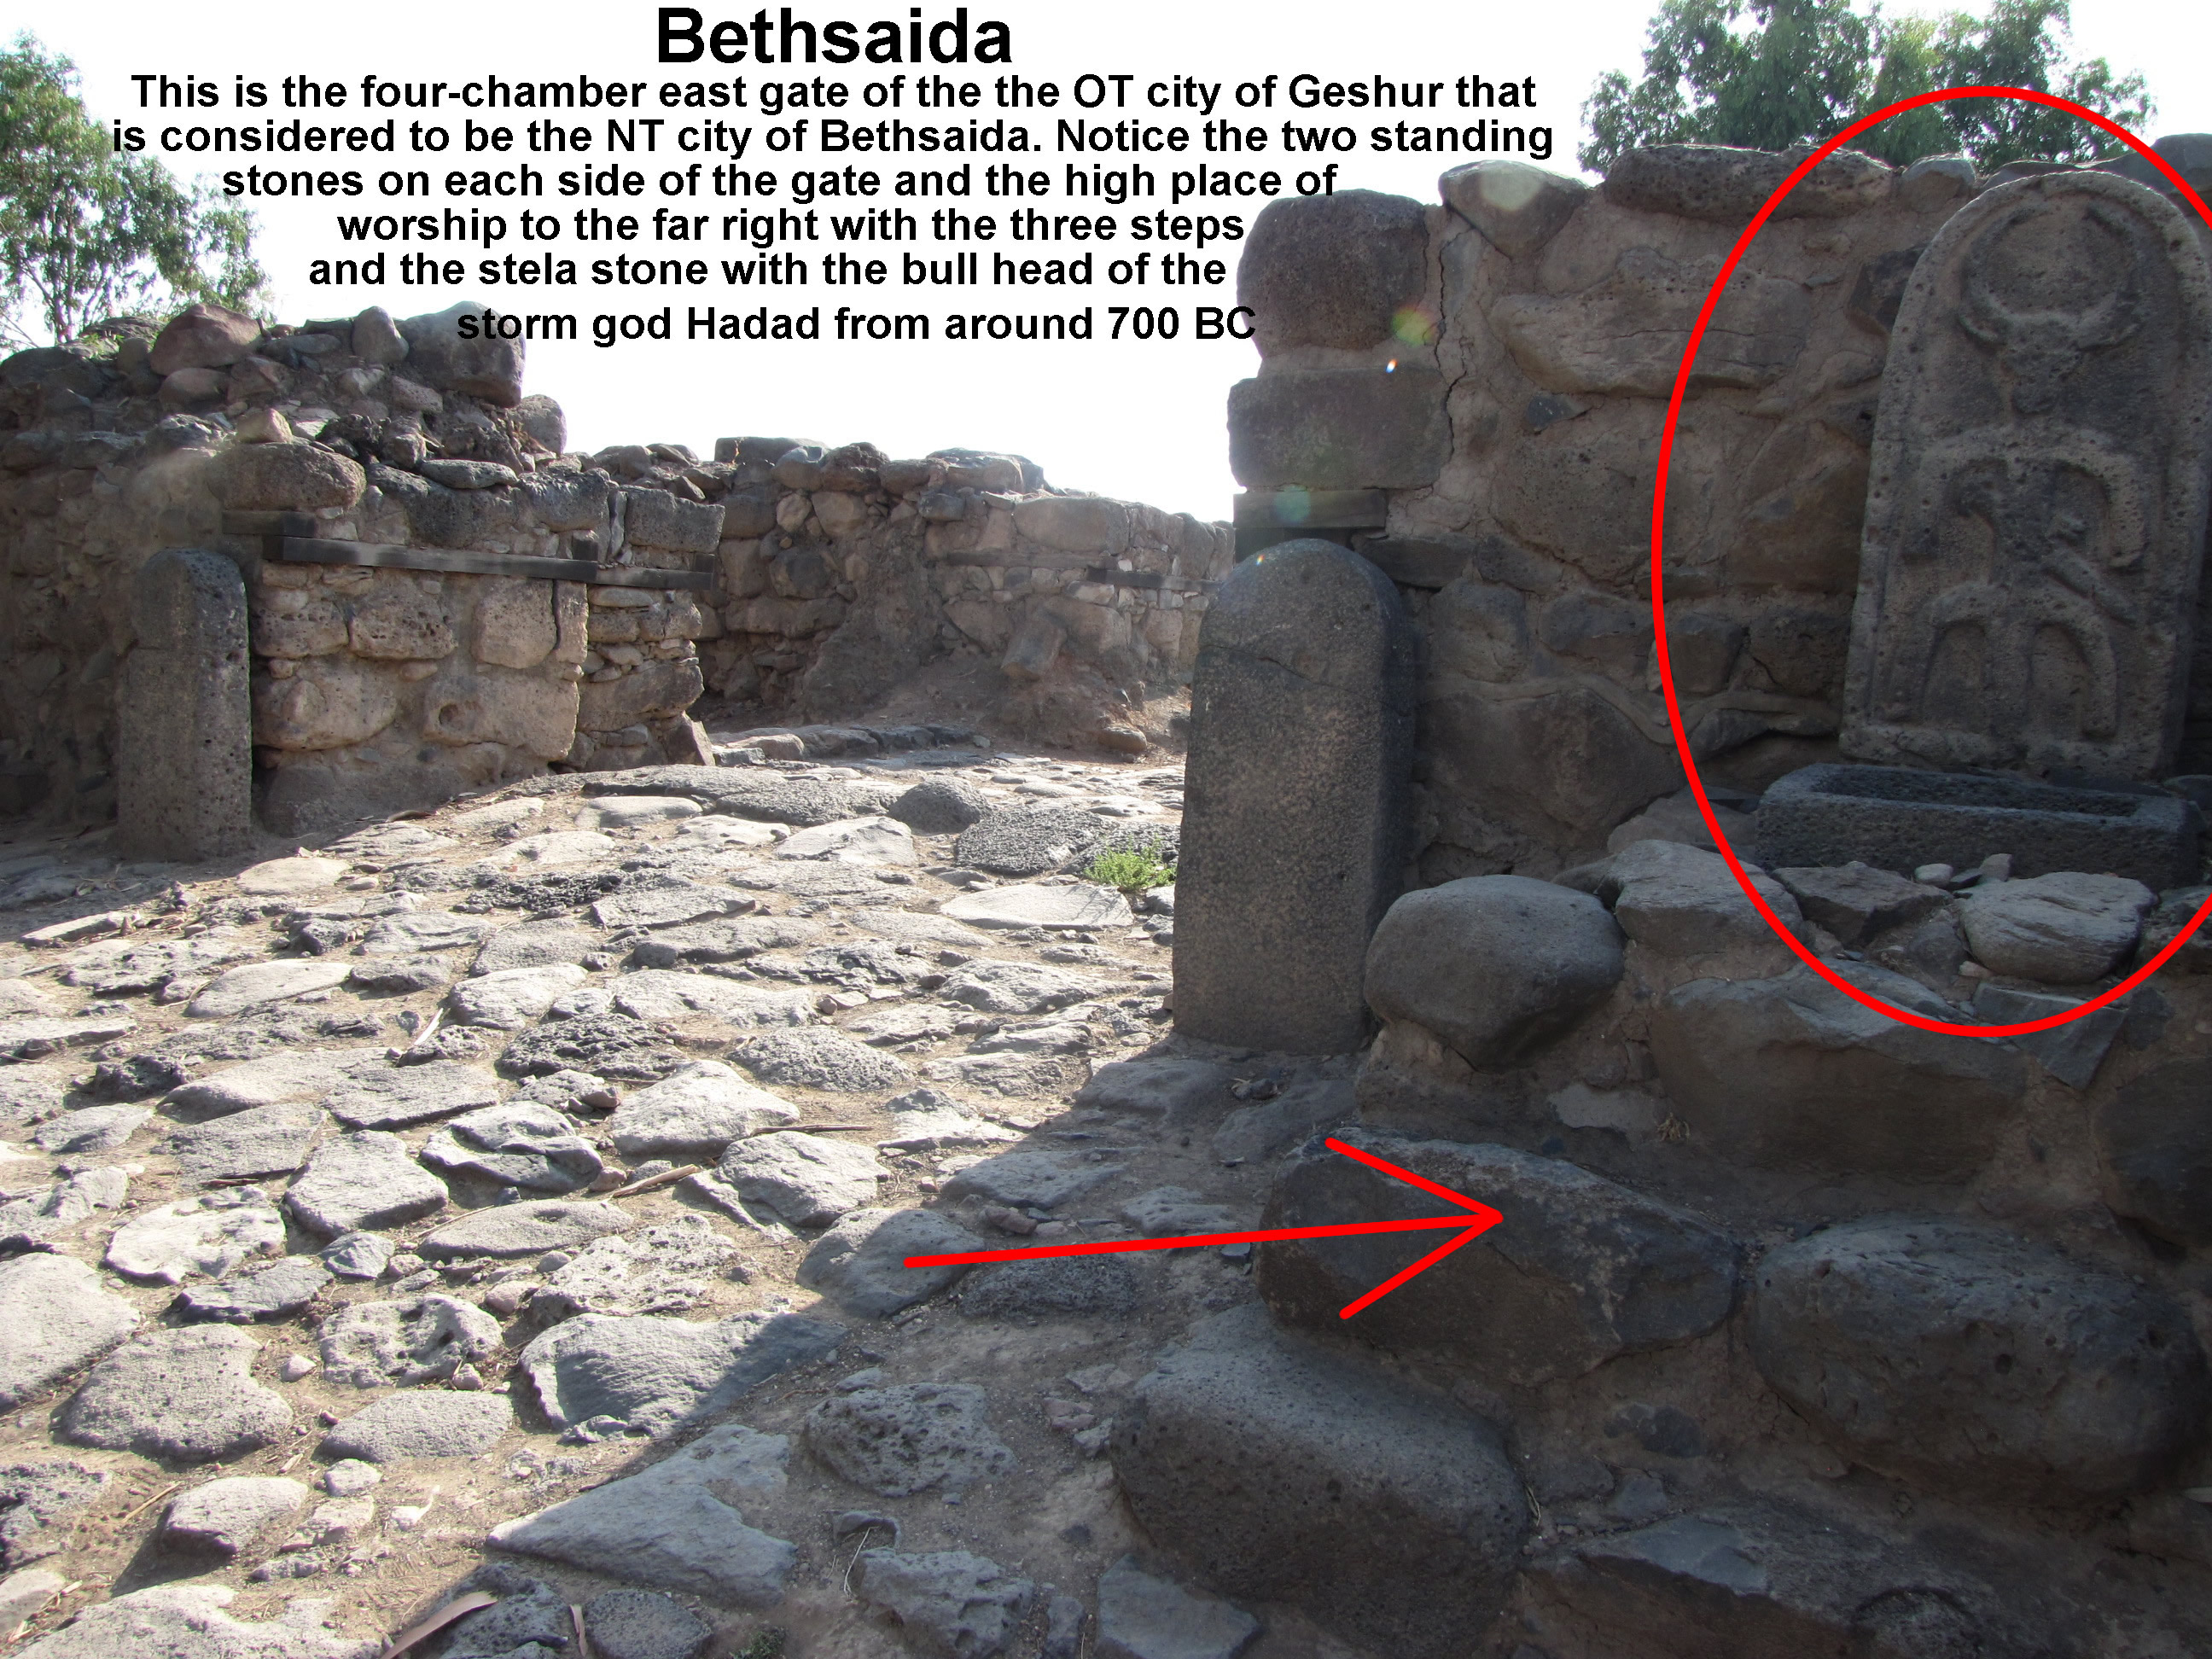 Gate of Geshur, Bethsaida